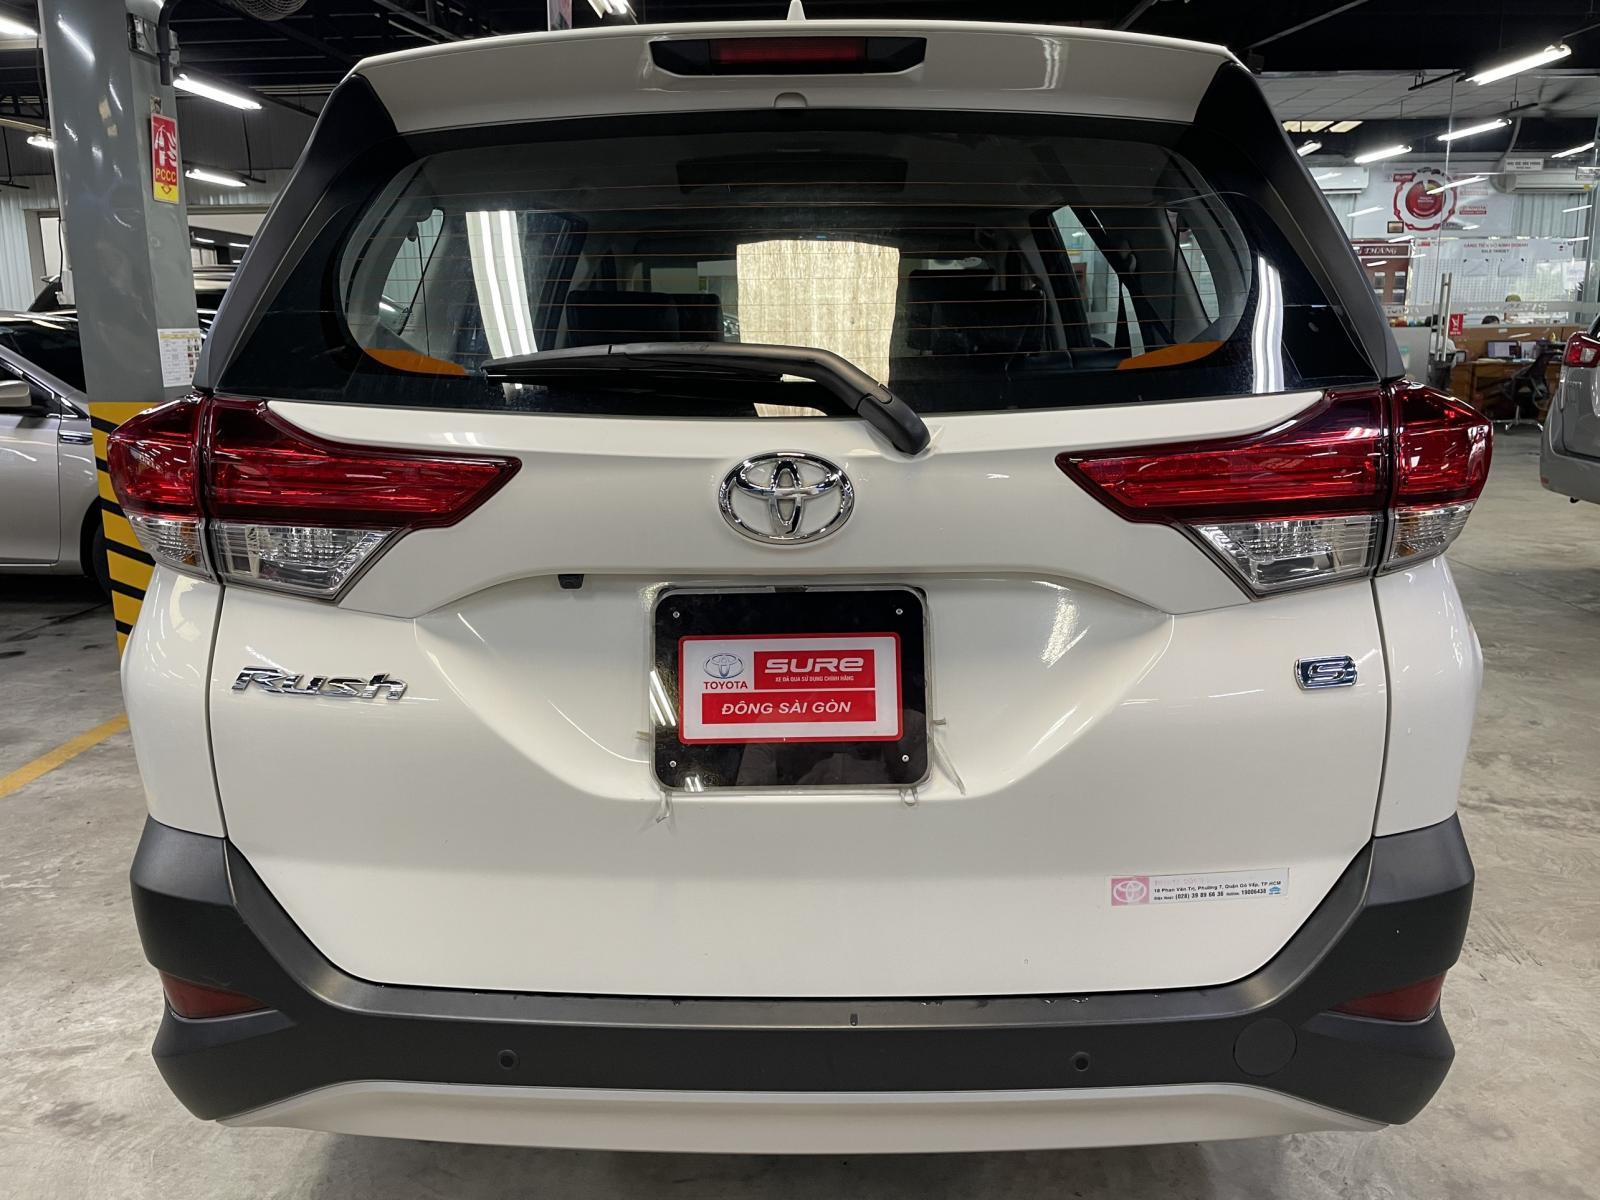 Toyota Toyota khác 1.5 2018 - Toyota Rush 2018 chất xe cứng cáp. Cam kết đầy đủ bảo hành chính hãng